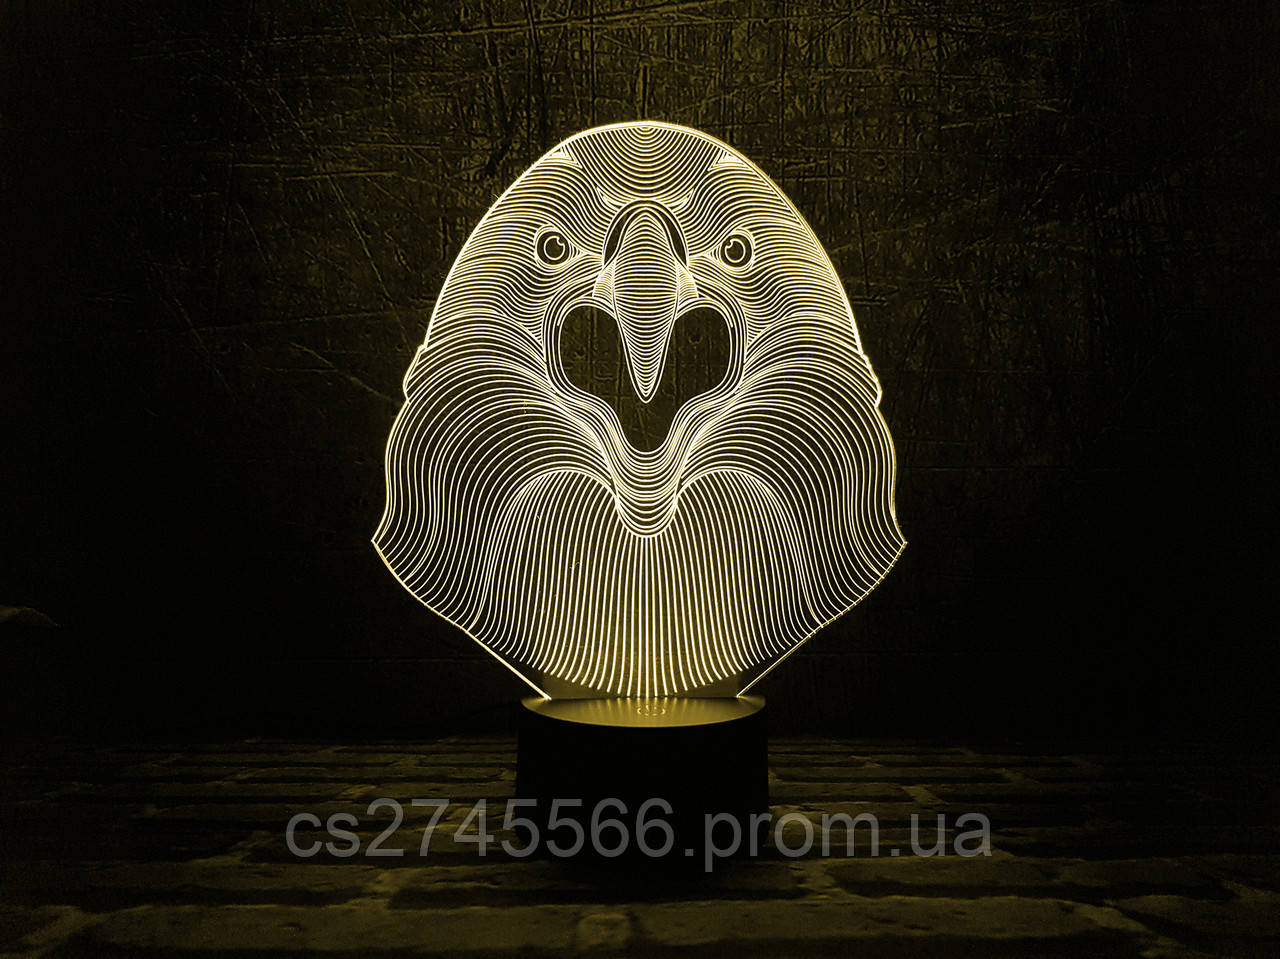 Змінна пластина для 3D ламп Орел